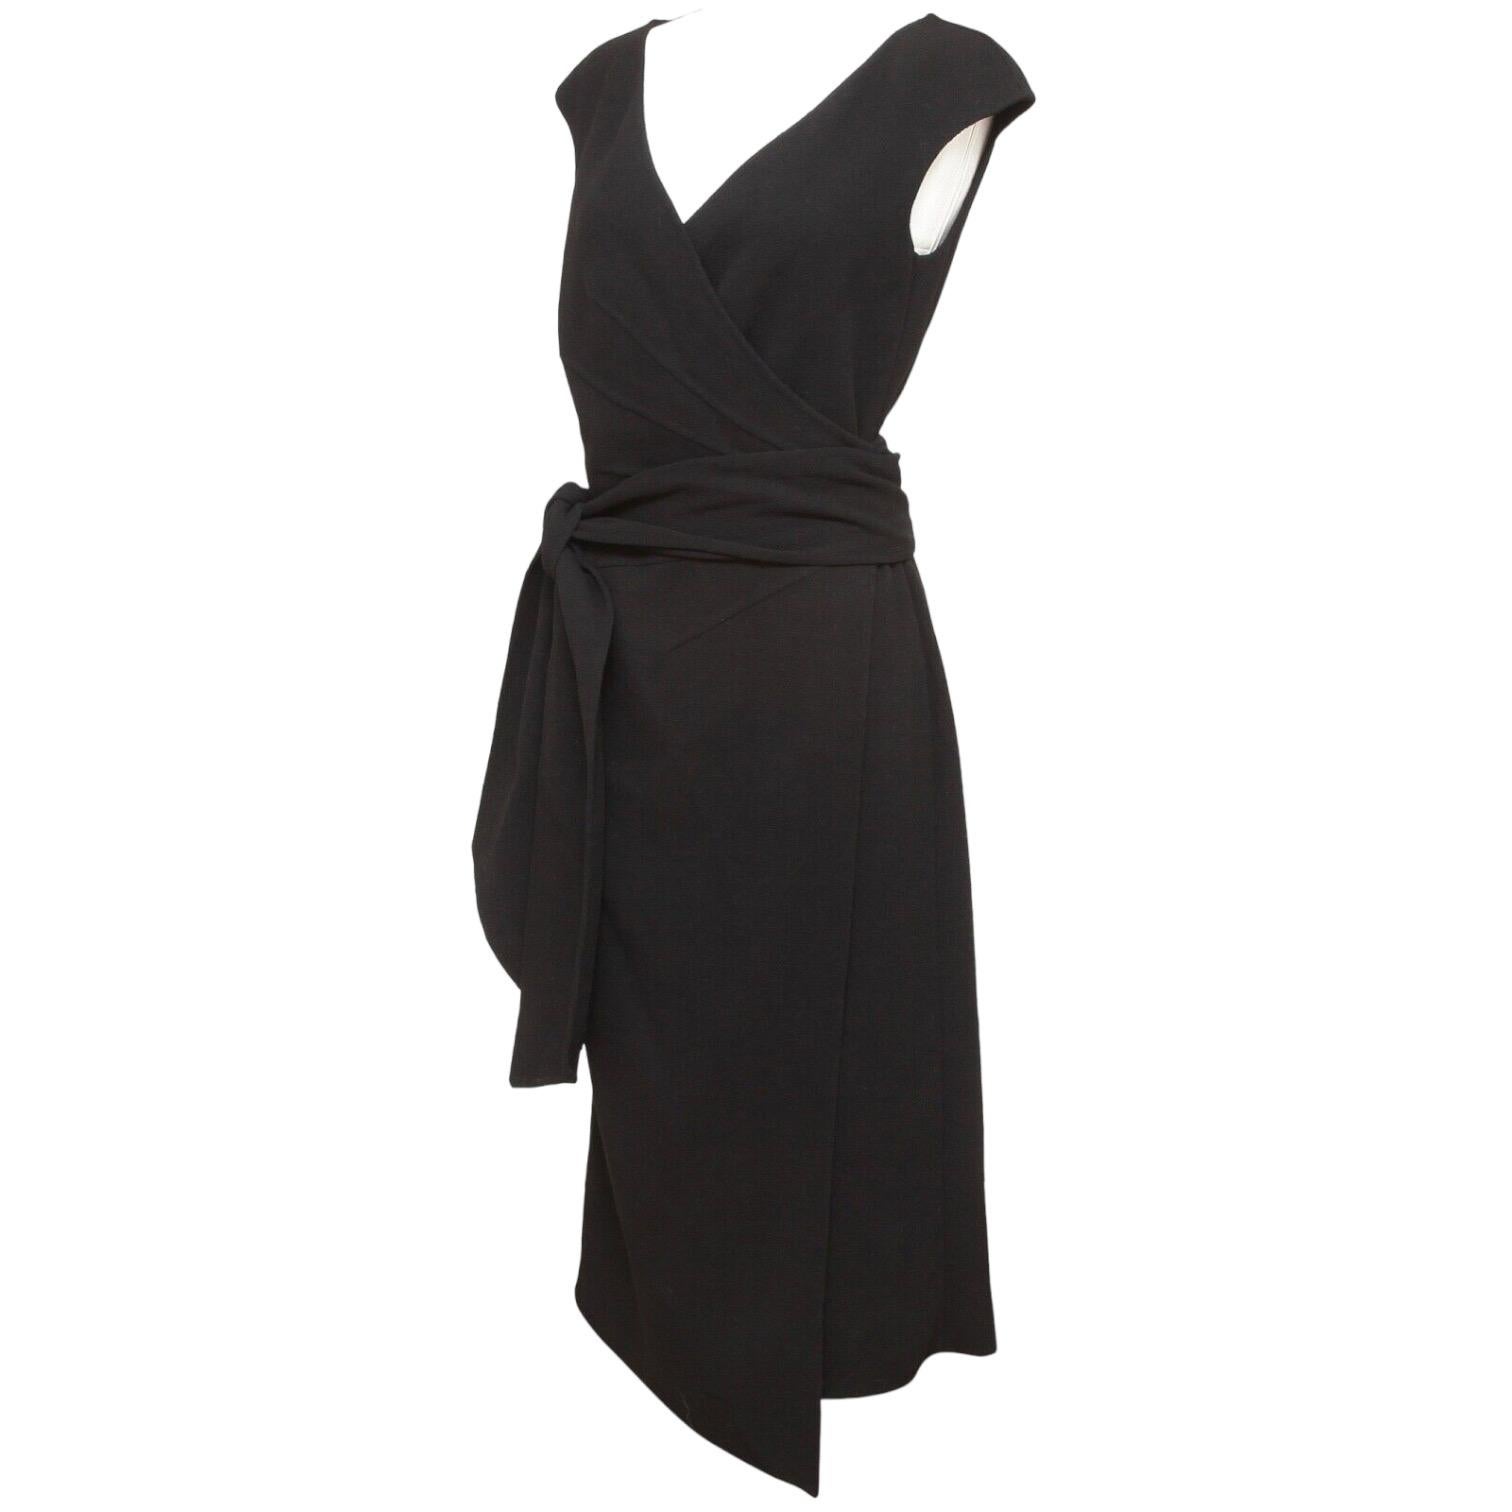 OSCAR DE LA RENTA Dress Black Sleeveless Wrap Knit Sz 8 NWT $2190 1